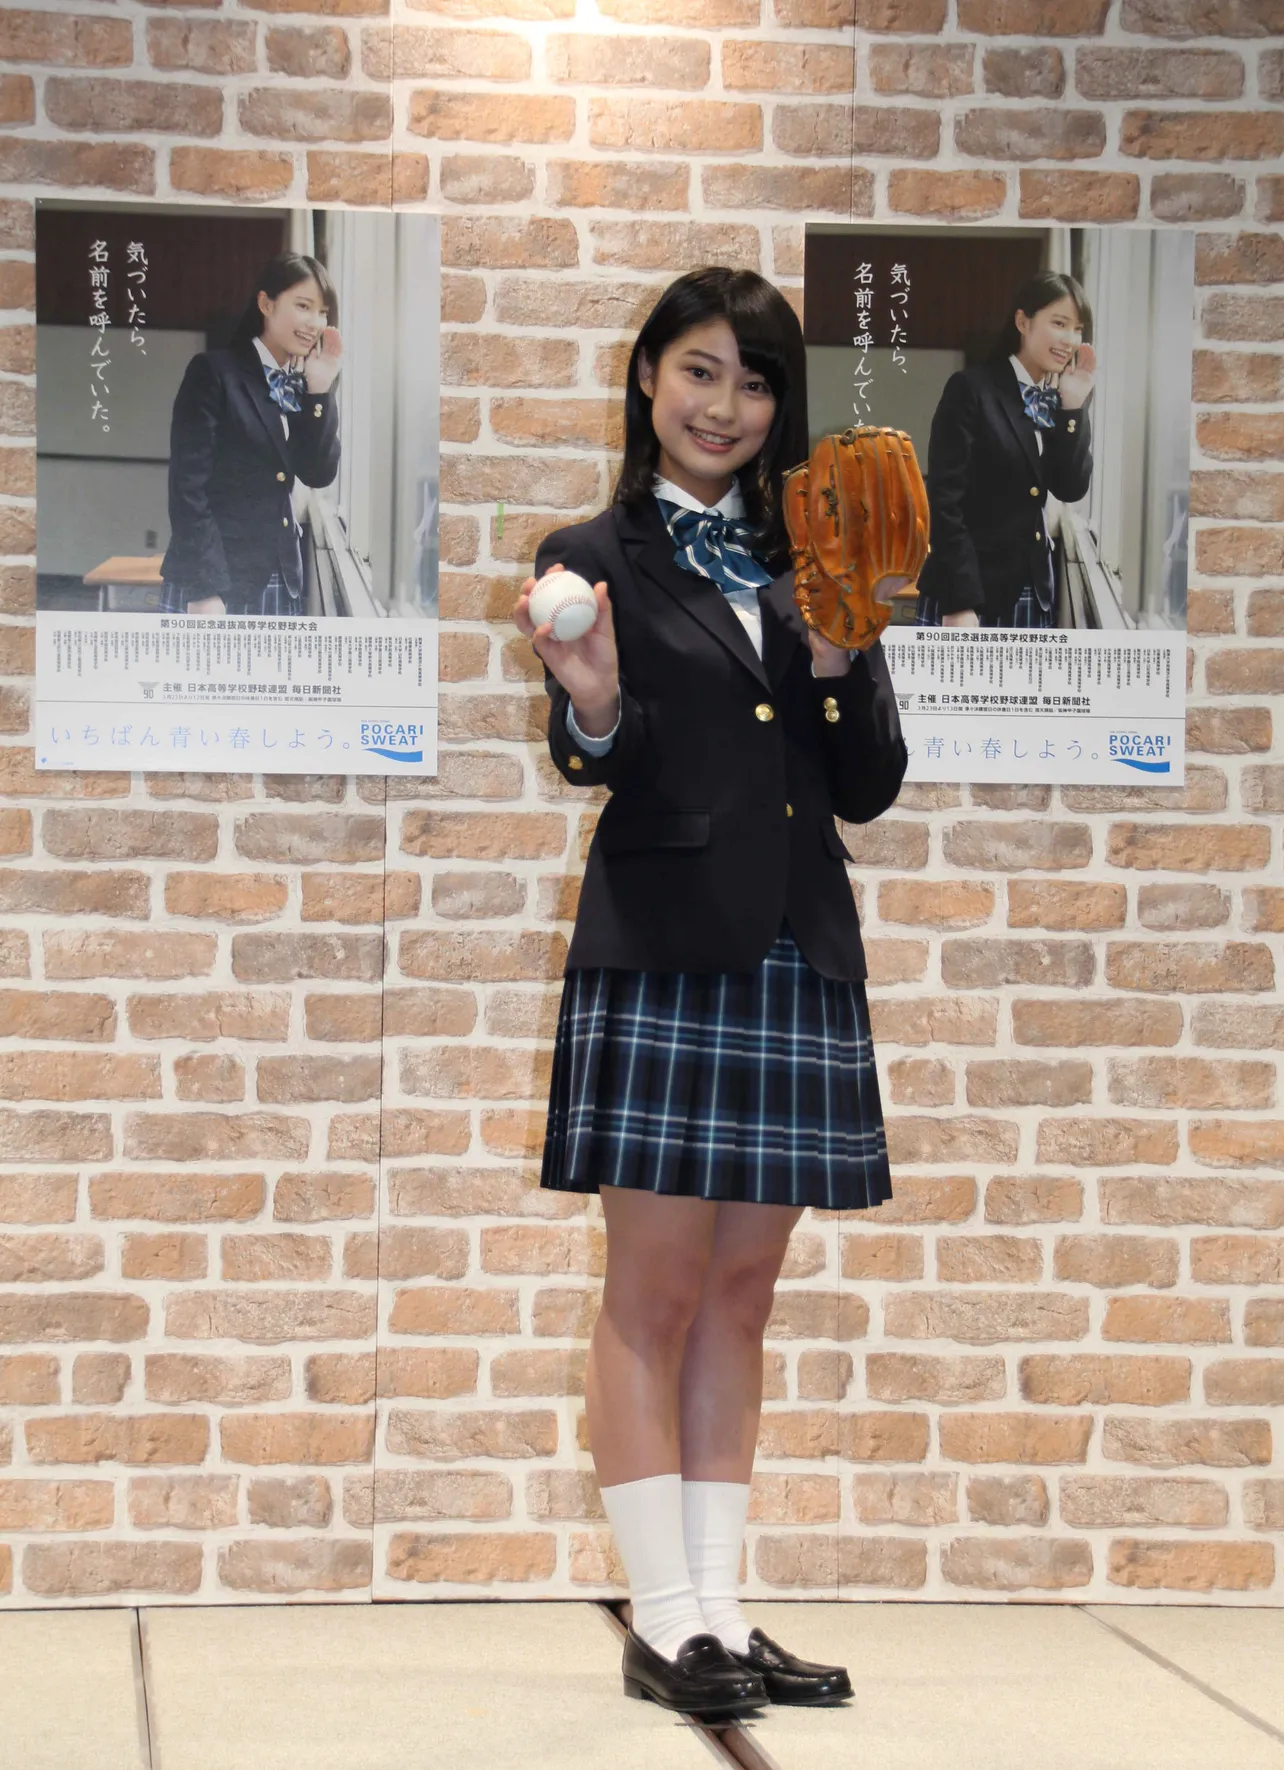 【写真を見る】高校1年生の玉田は「学校の授業で野球をしたことがあります」とコメント